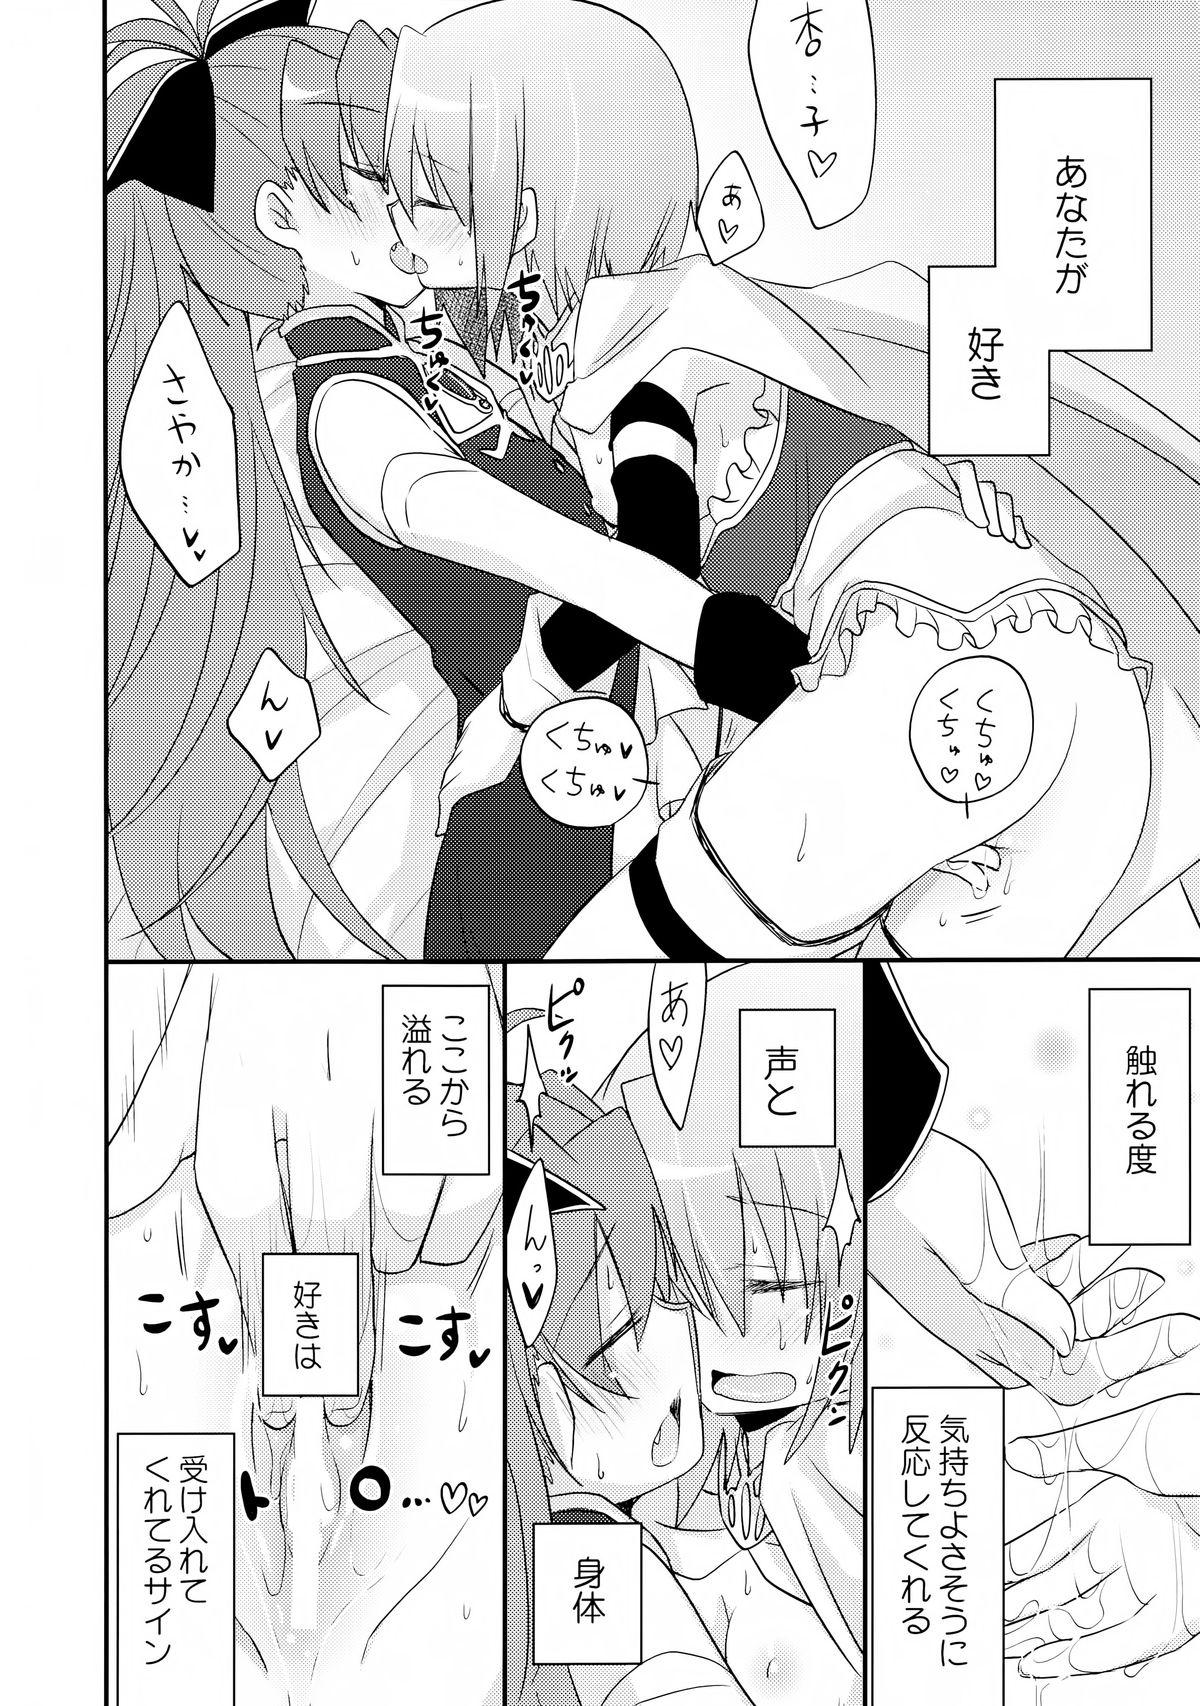 Namorada Atashitachi no Jigo Senkyou - Puella magi madoka magica Jacking Off - Page 8